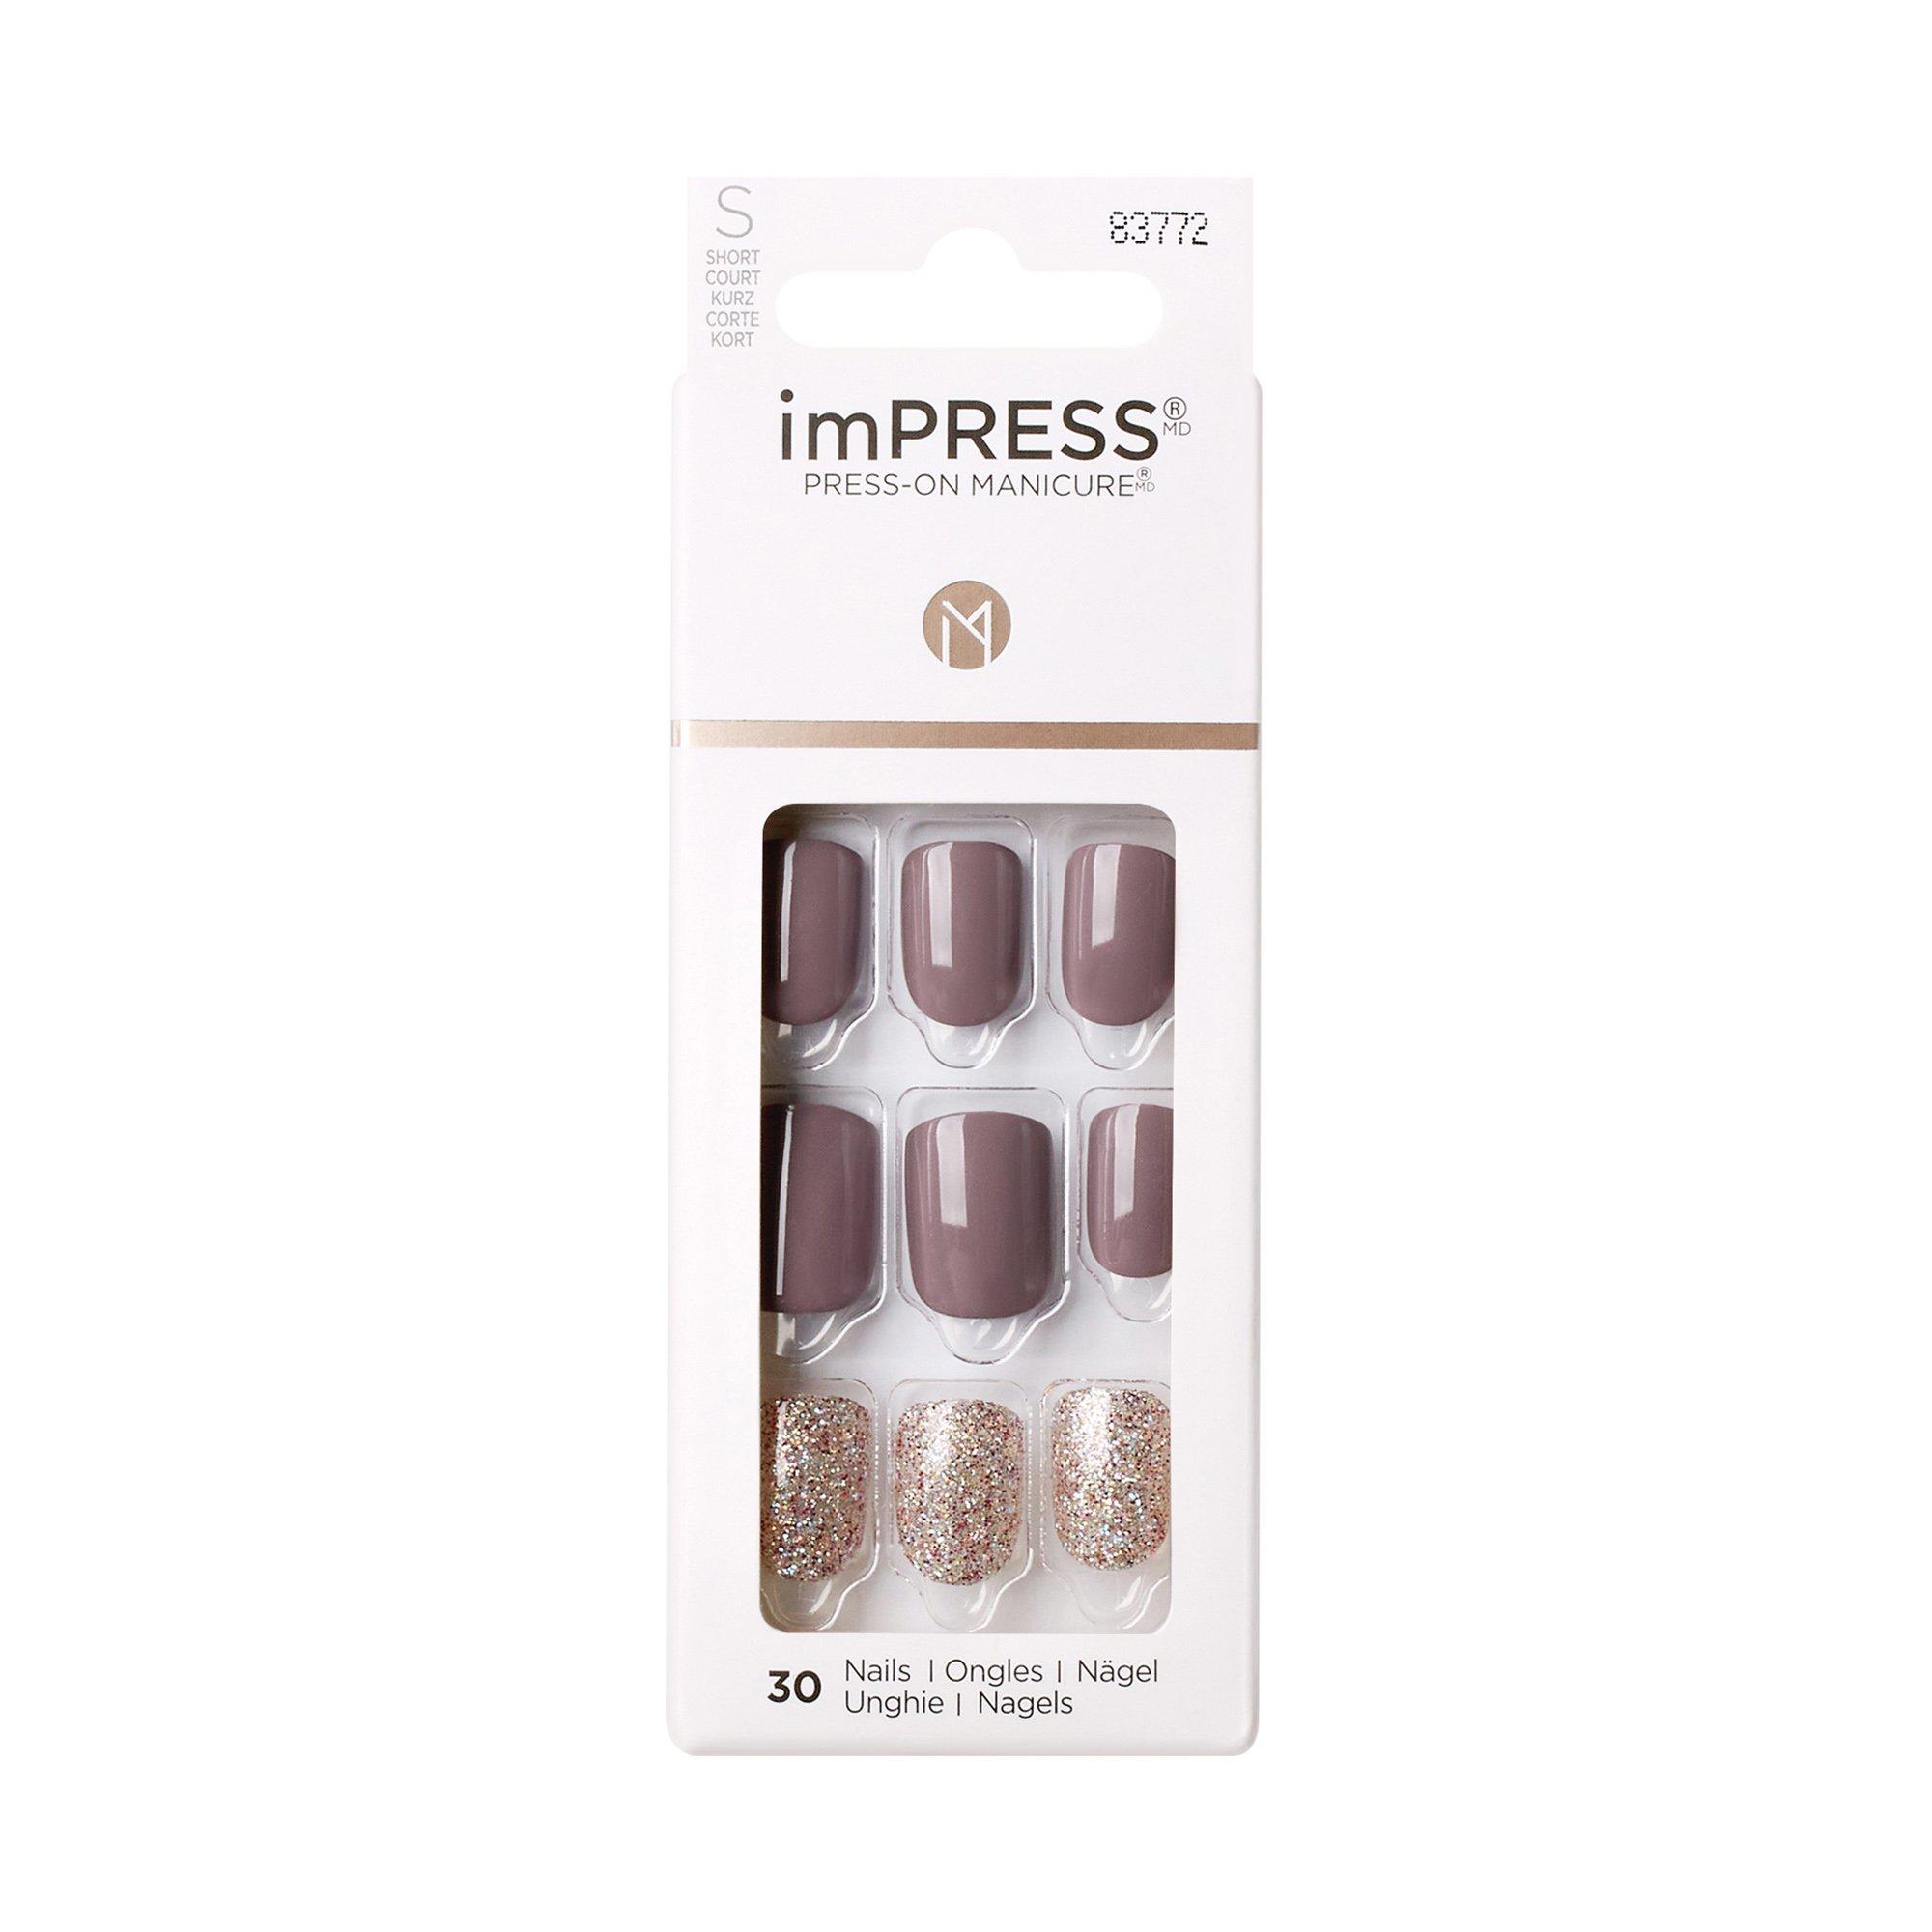 KISS ImPress KS imPRESS Nails 